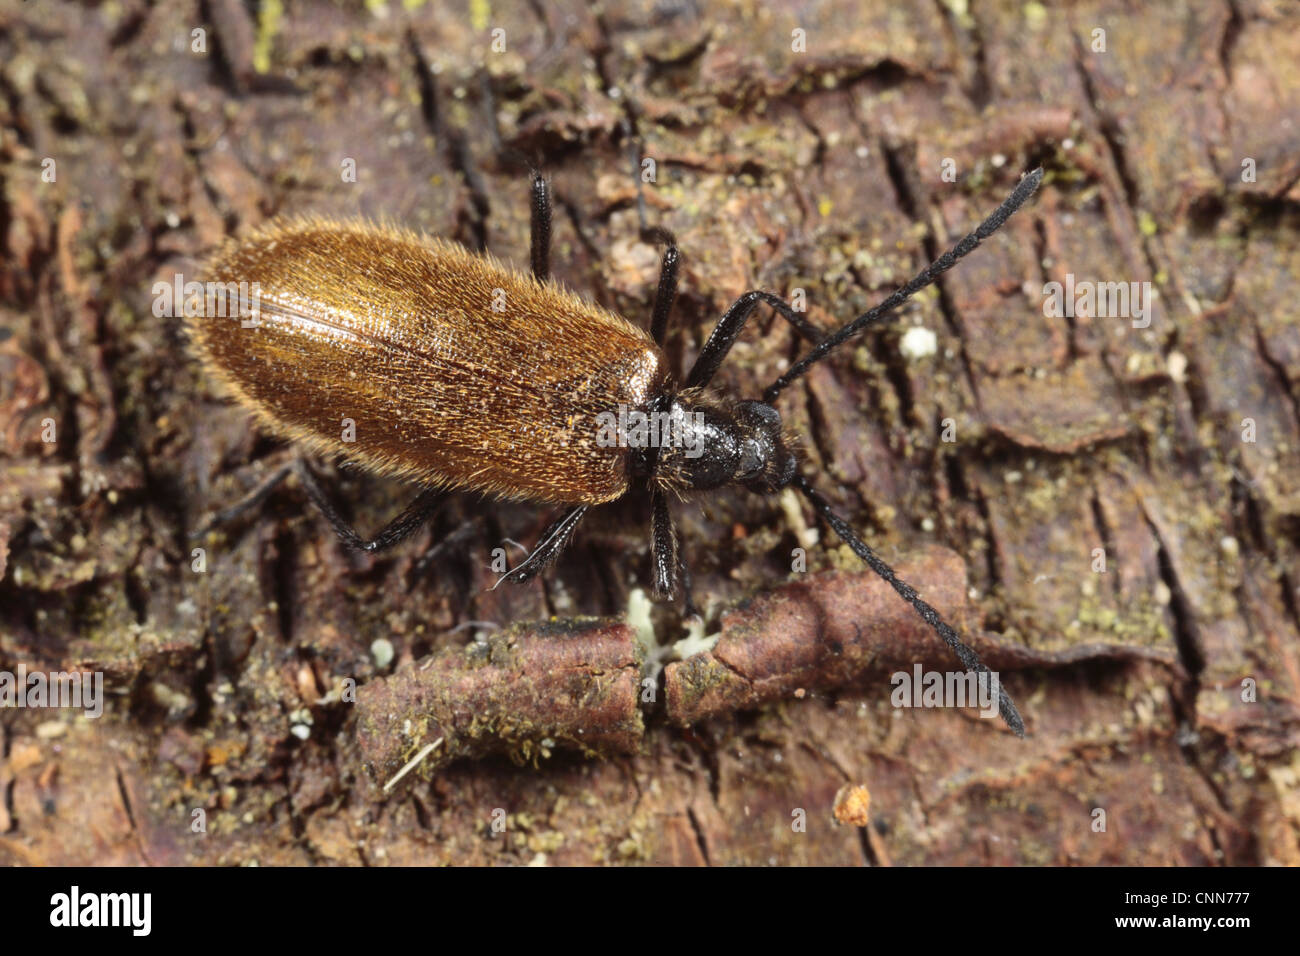 Darkling Beetle Lagria hirta (adultes), debout sur une écorce de bouleau, Powys, Pays de Galles, octobre Banque D'Images